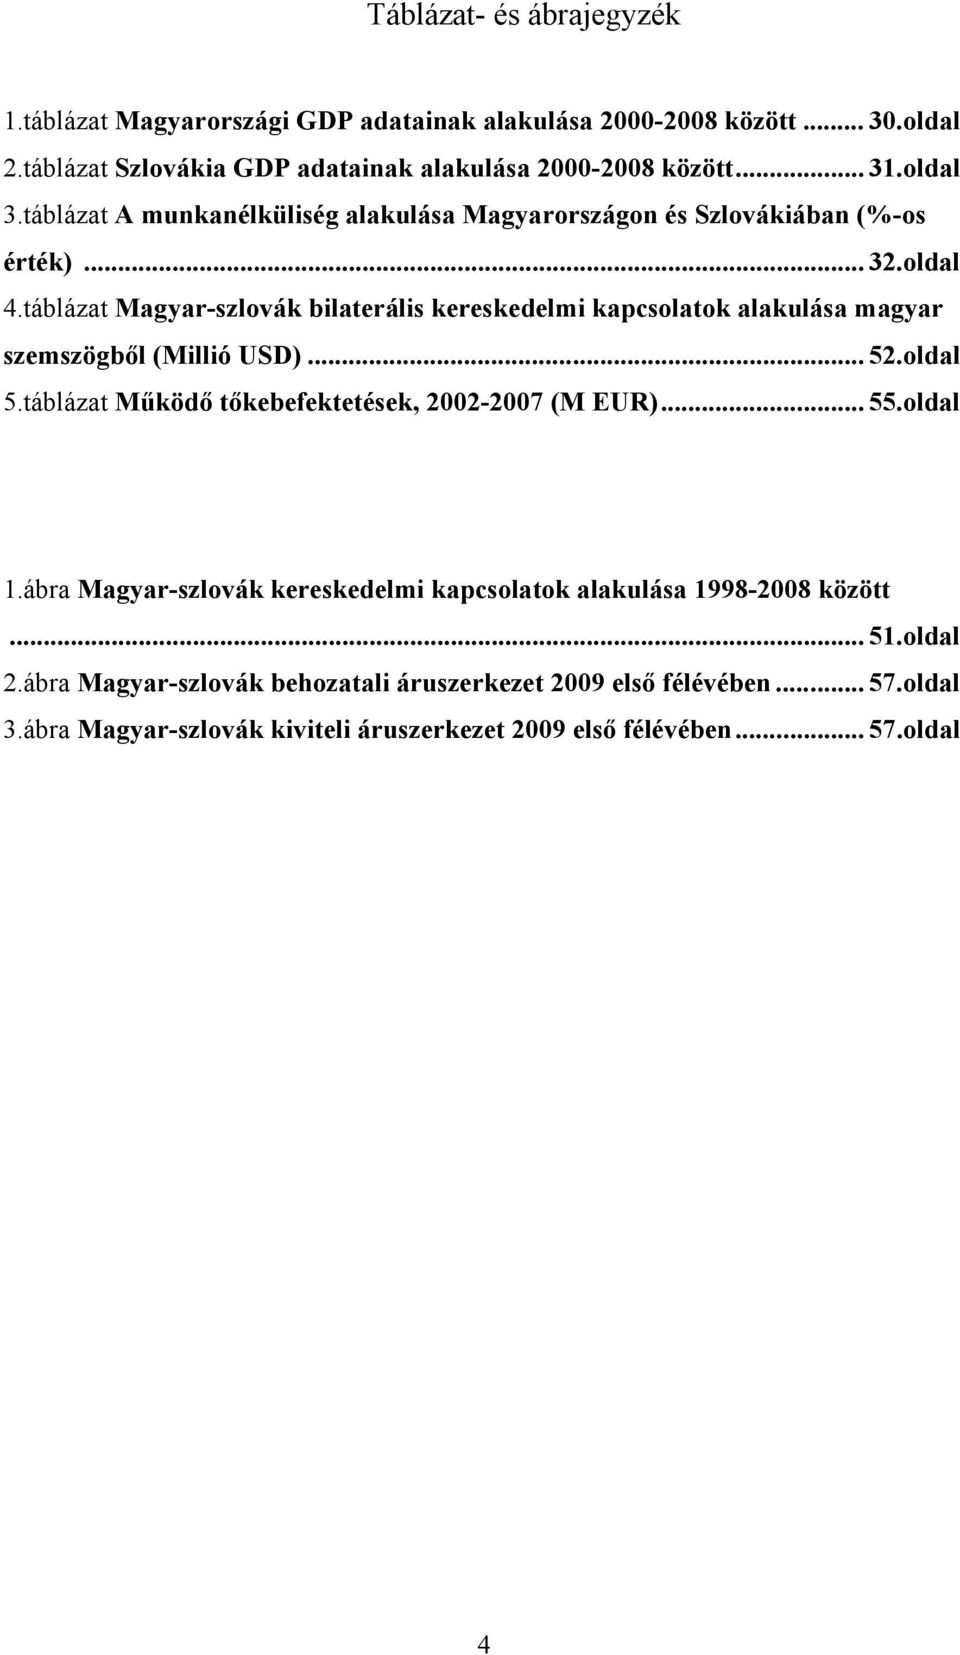 táblázat Magyar-szlovák bilaterális kereskedelmi kapcsolatok alakulása magyar szemszögből (Millió USD)... 52.oldal 5.táblázat Működő tőkebefektetések, 2002-2007 (M EUR)... 55.